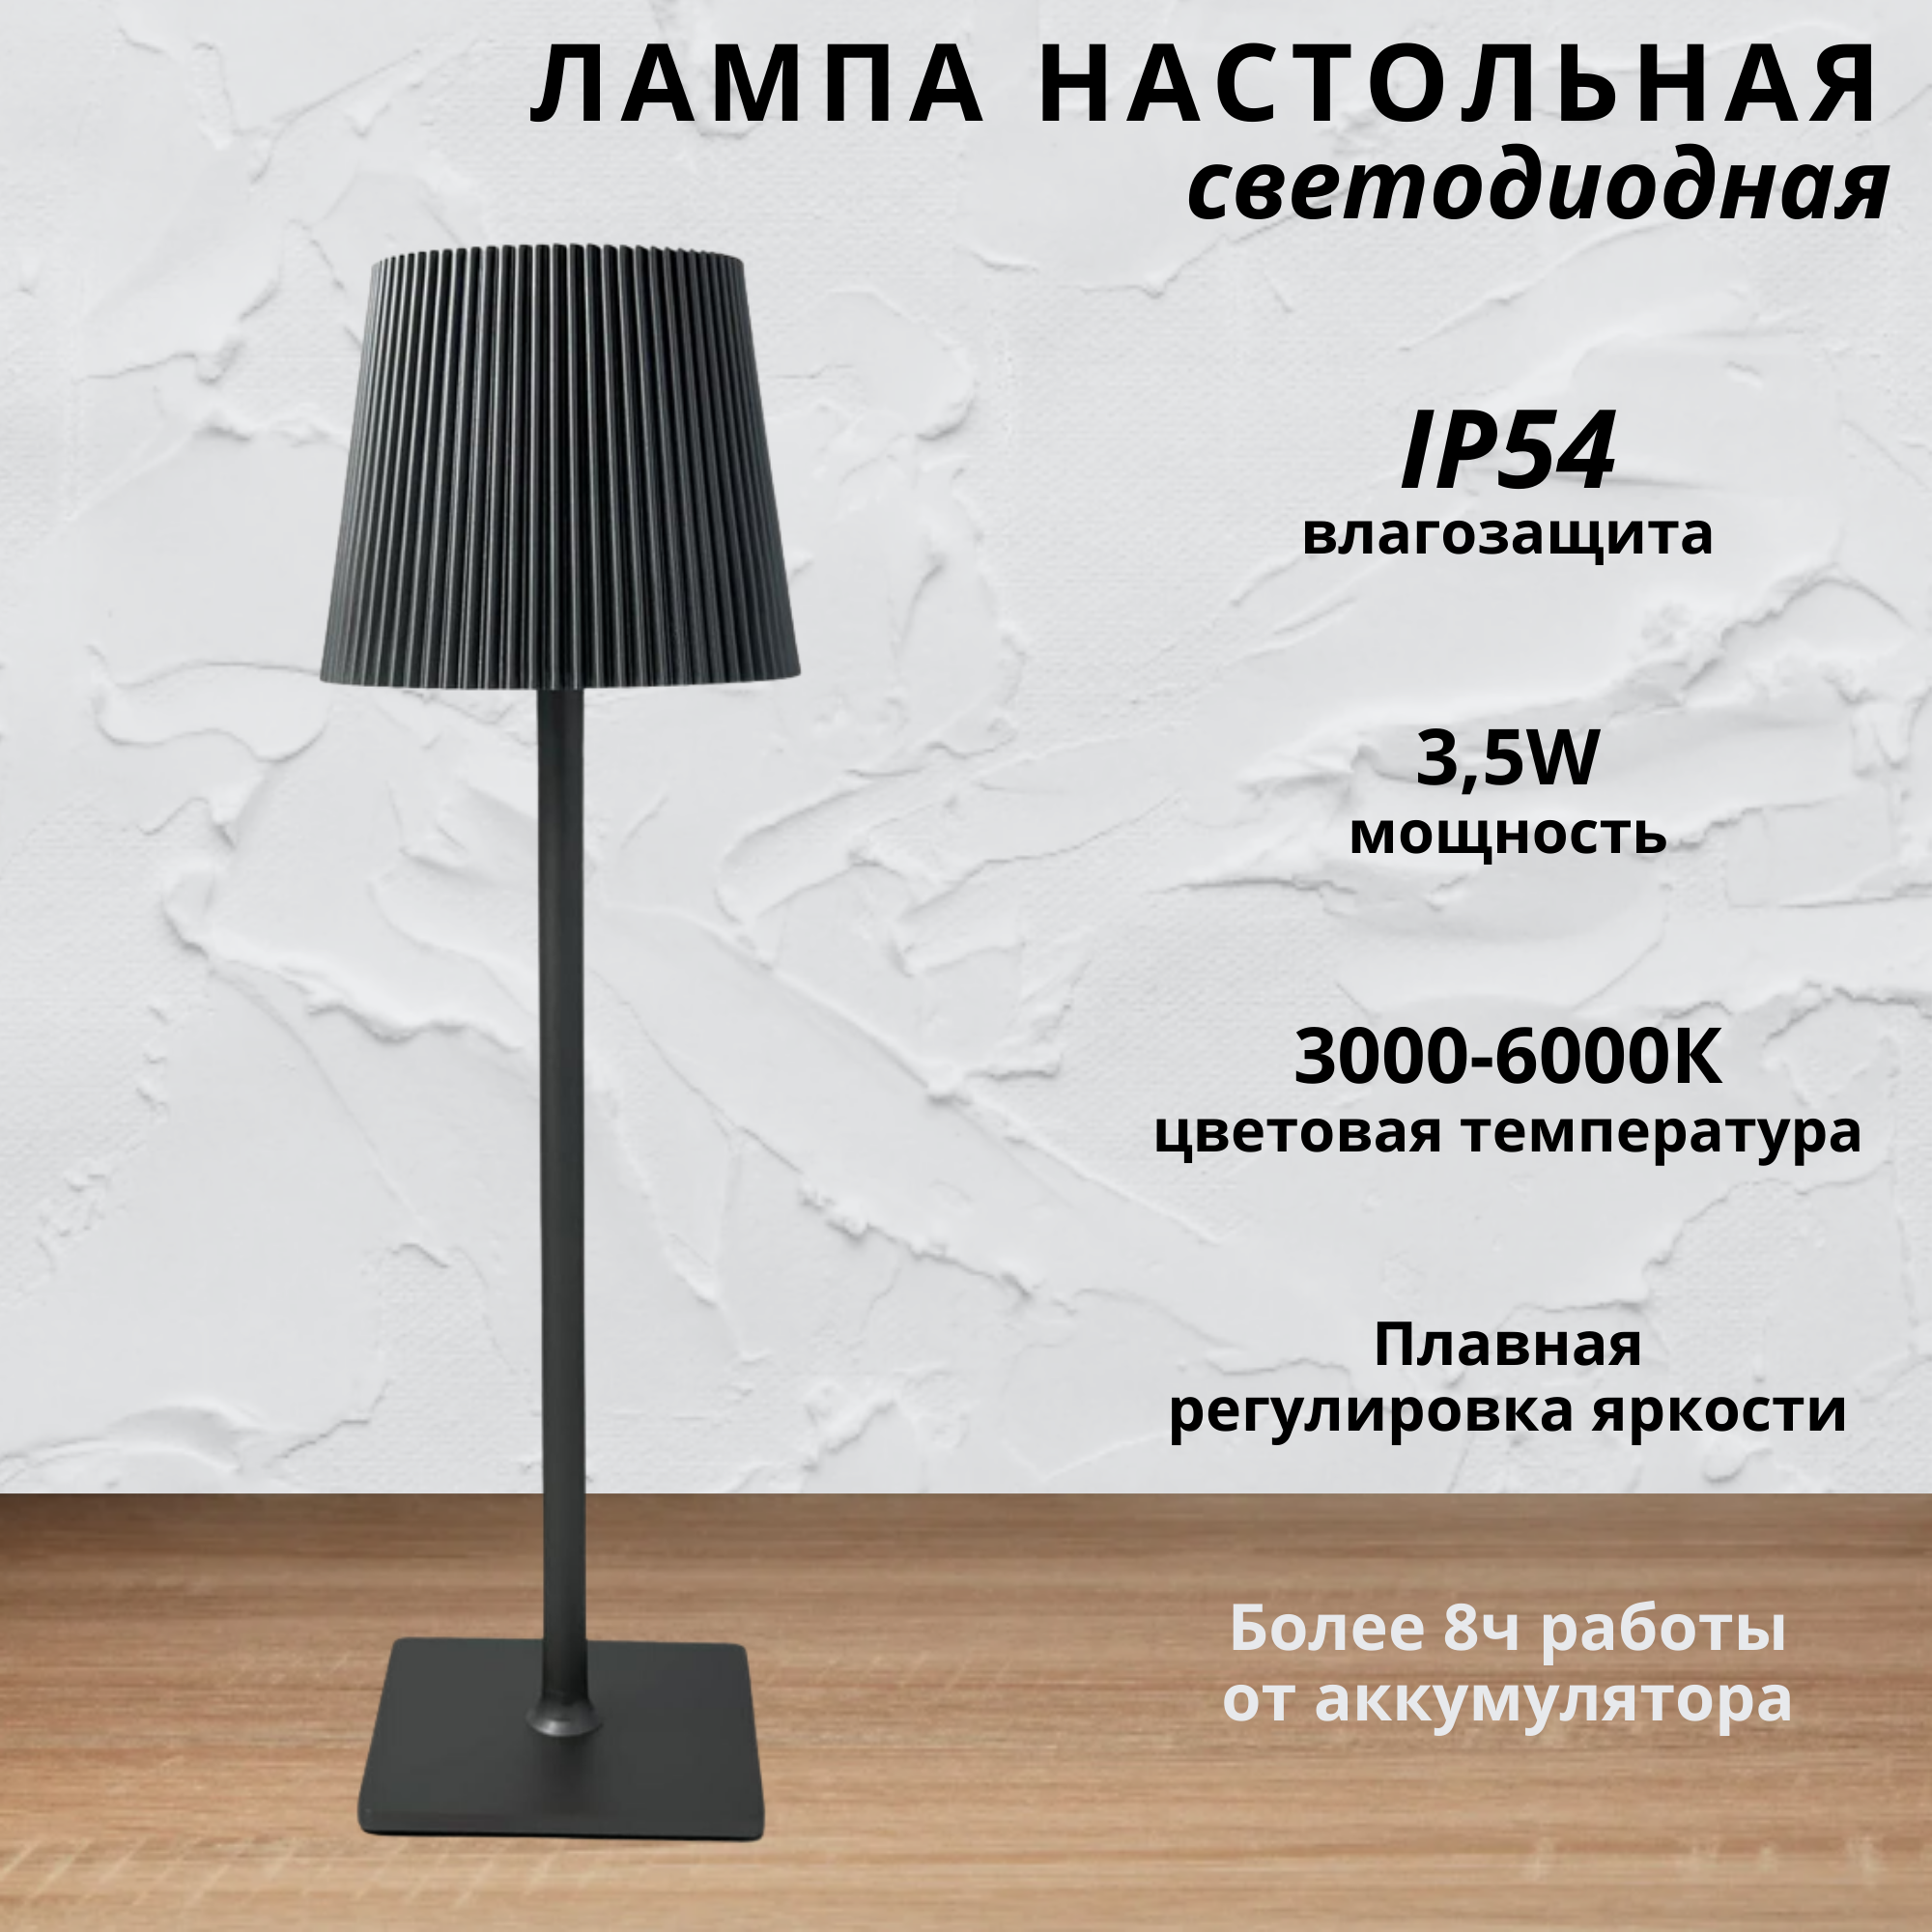 FEDOTOV Беспроводная настольная лампа с рефленым абажуром